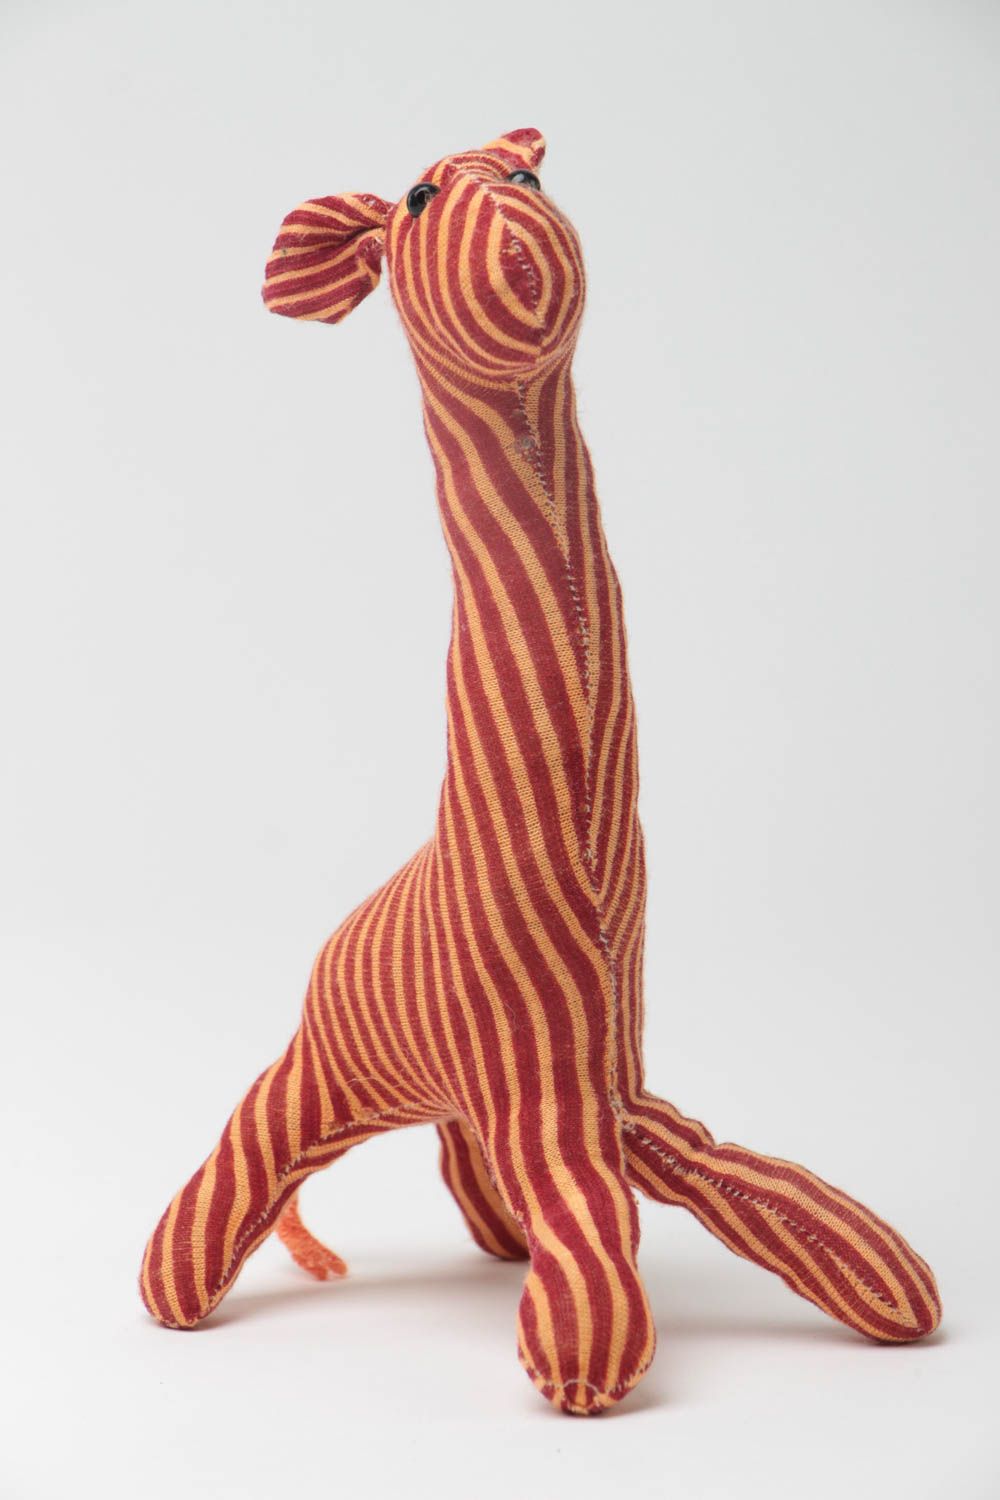 Juguete de tela artesanal para niños cosido a mano con forma de jirafa foto 2